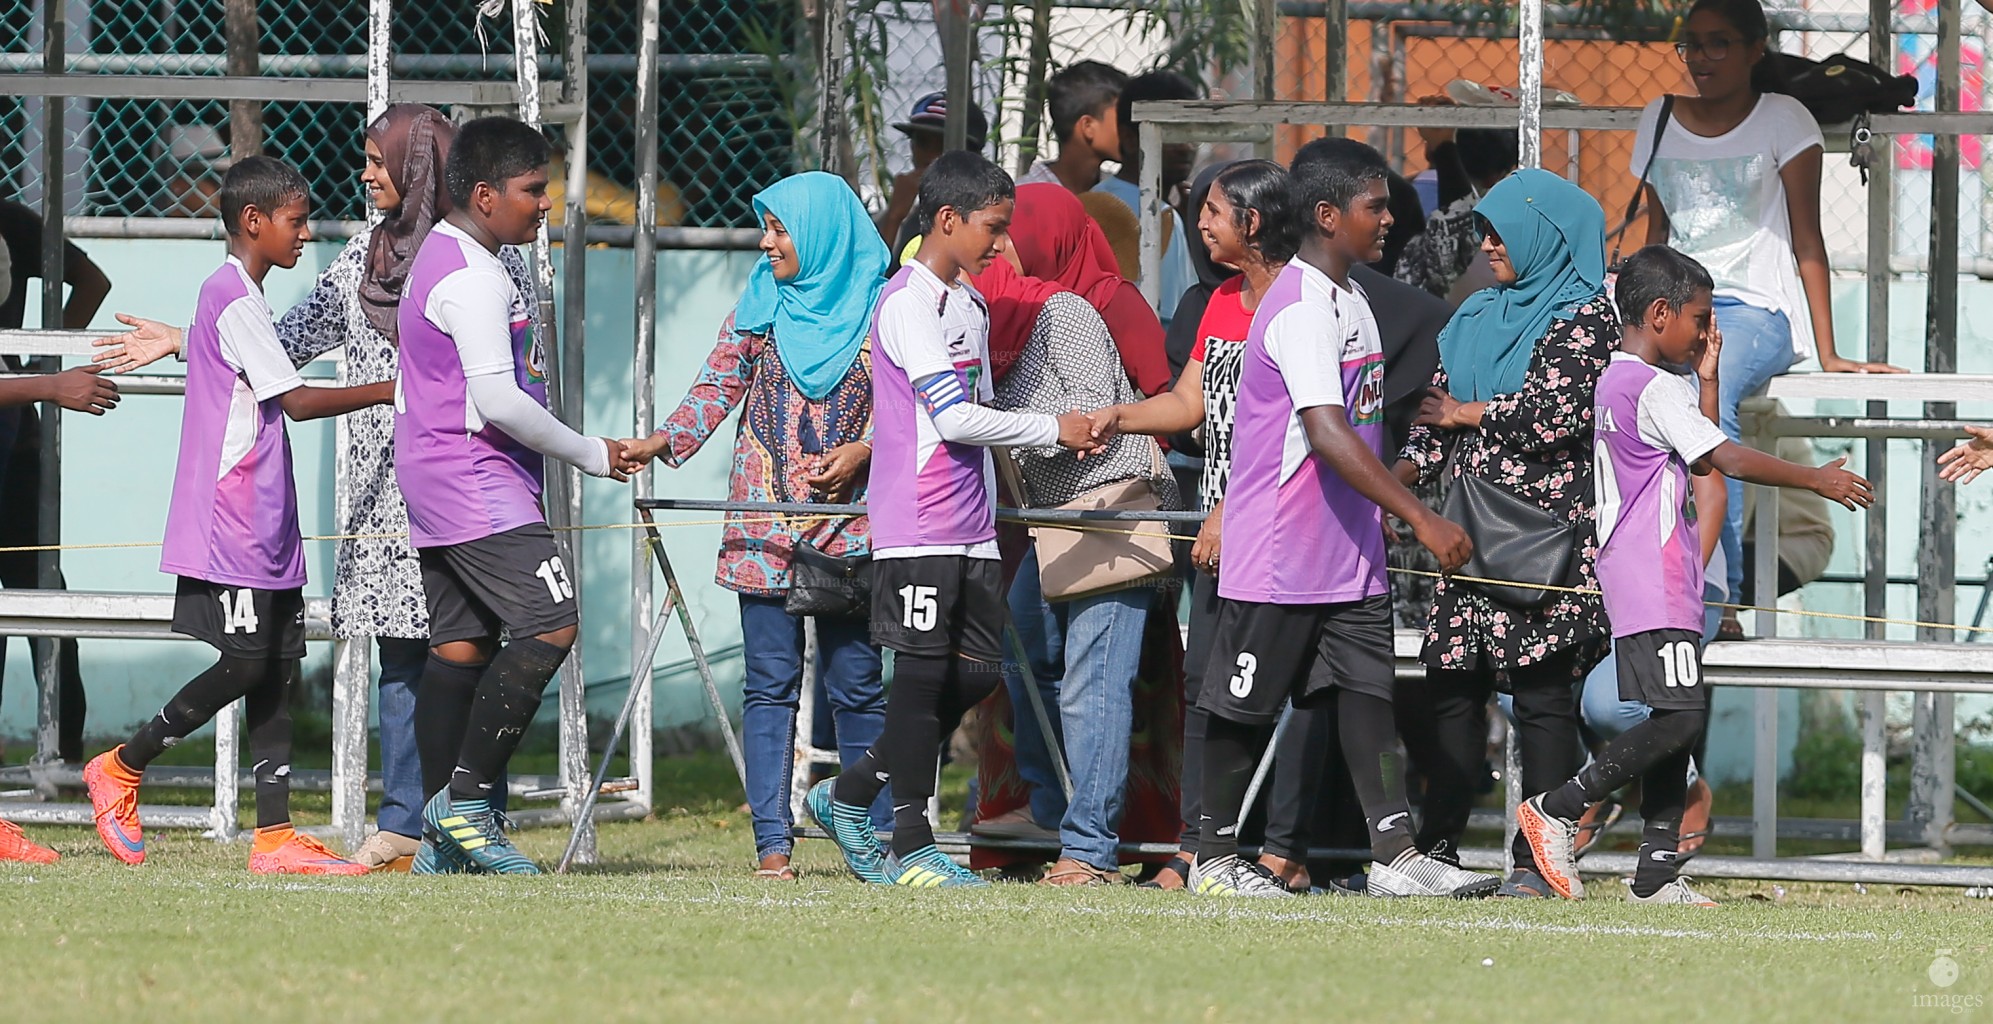 Milo Inter-school U14 Football -Iskandhar School vs Hiriya School